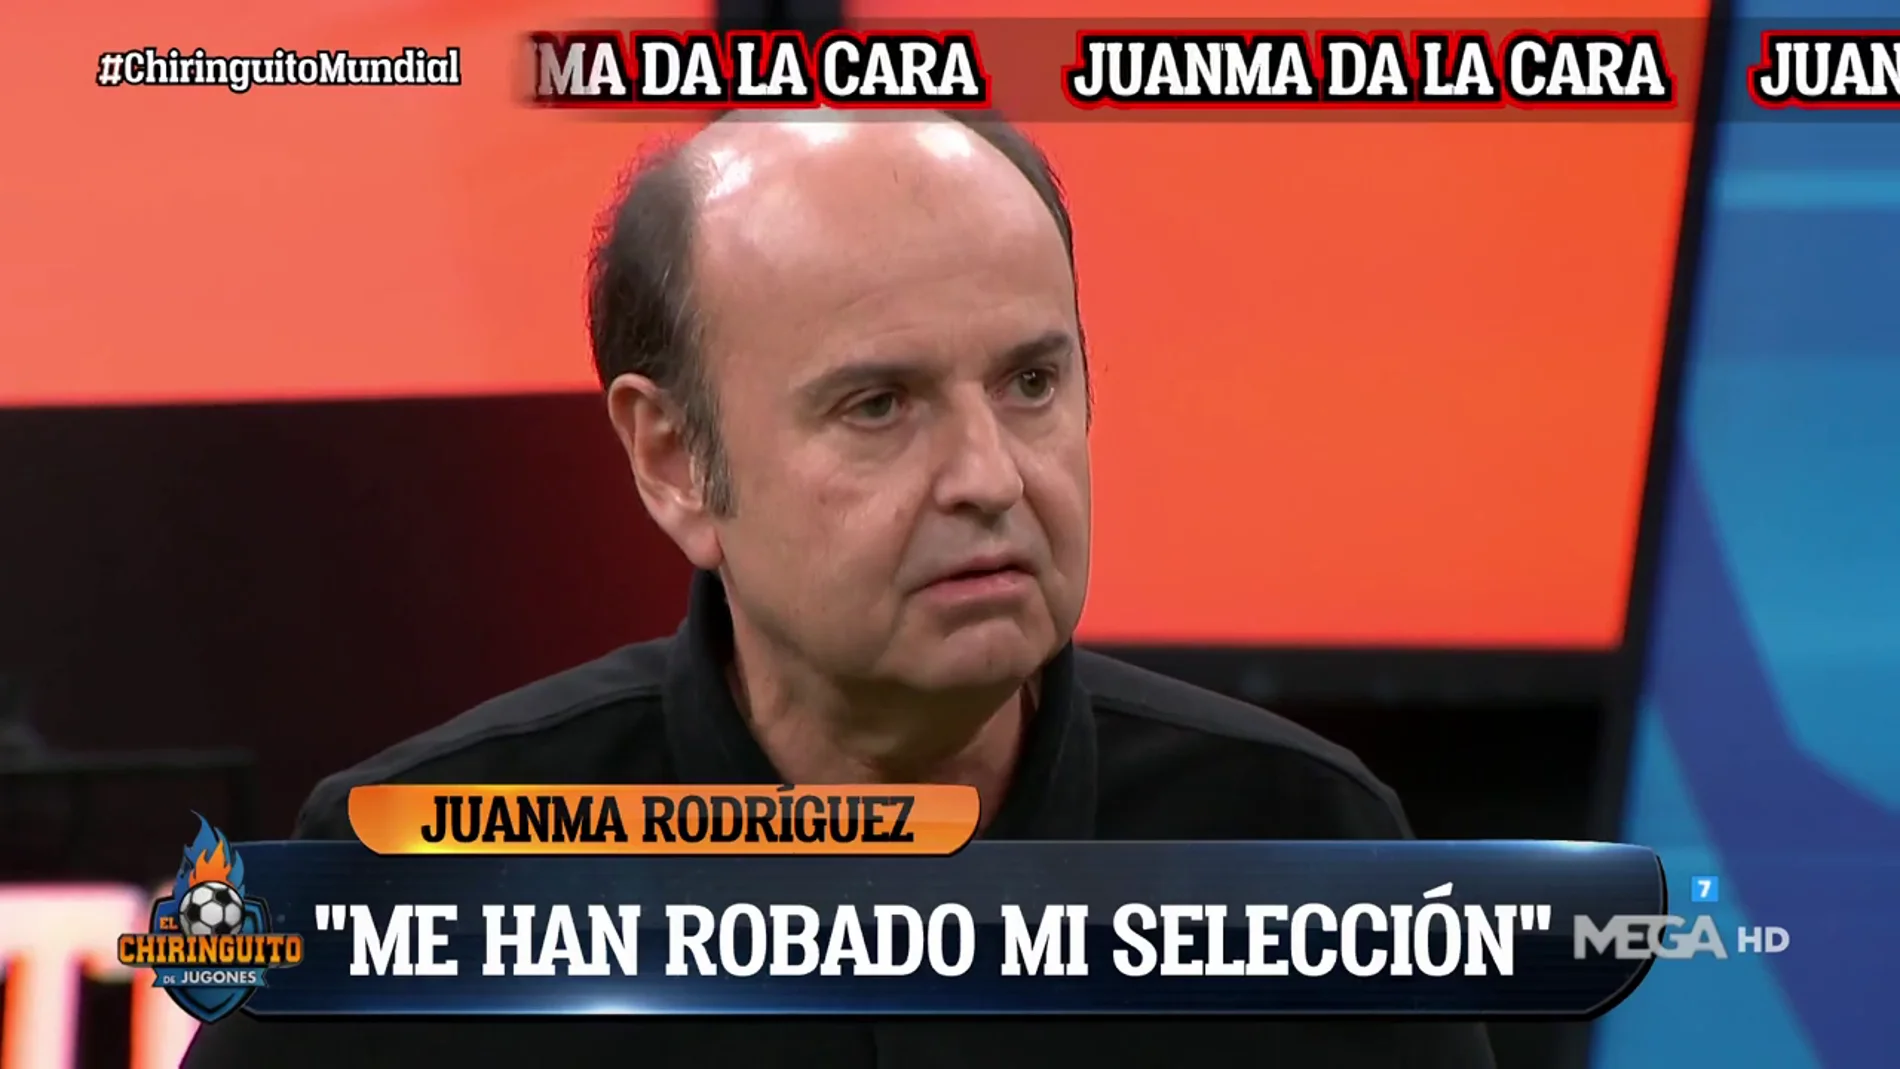 Juanma Rodriguez 'la lía'